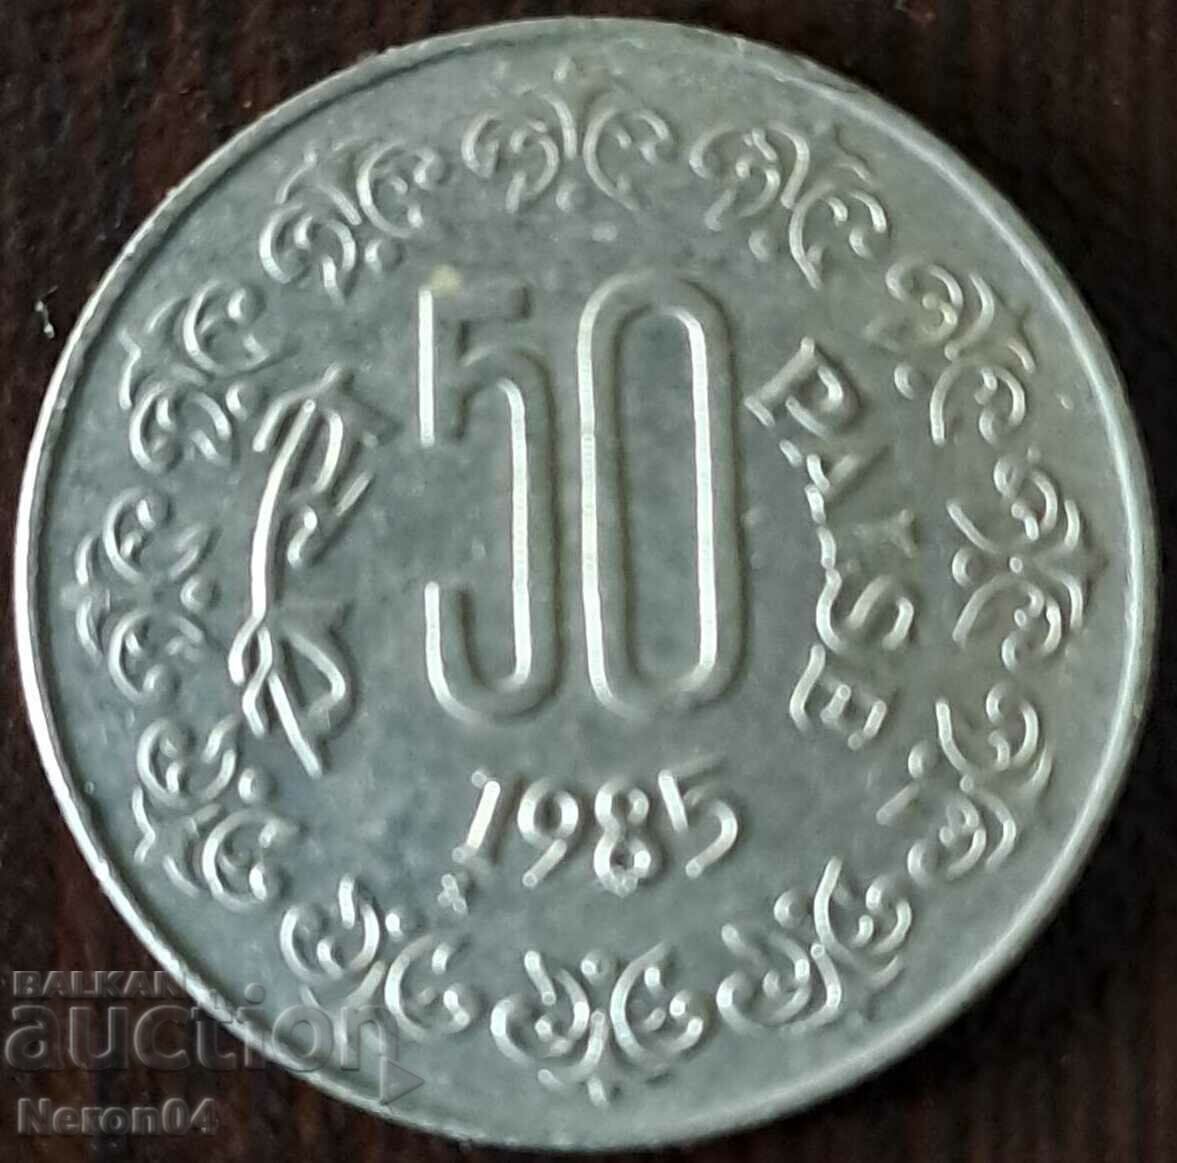 50 Paisa 1985, India